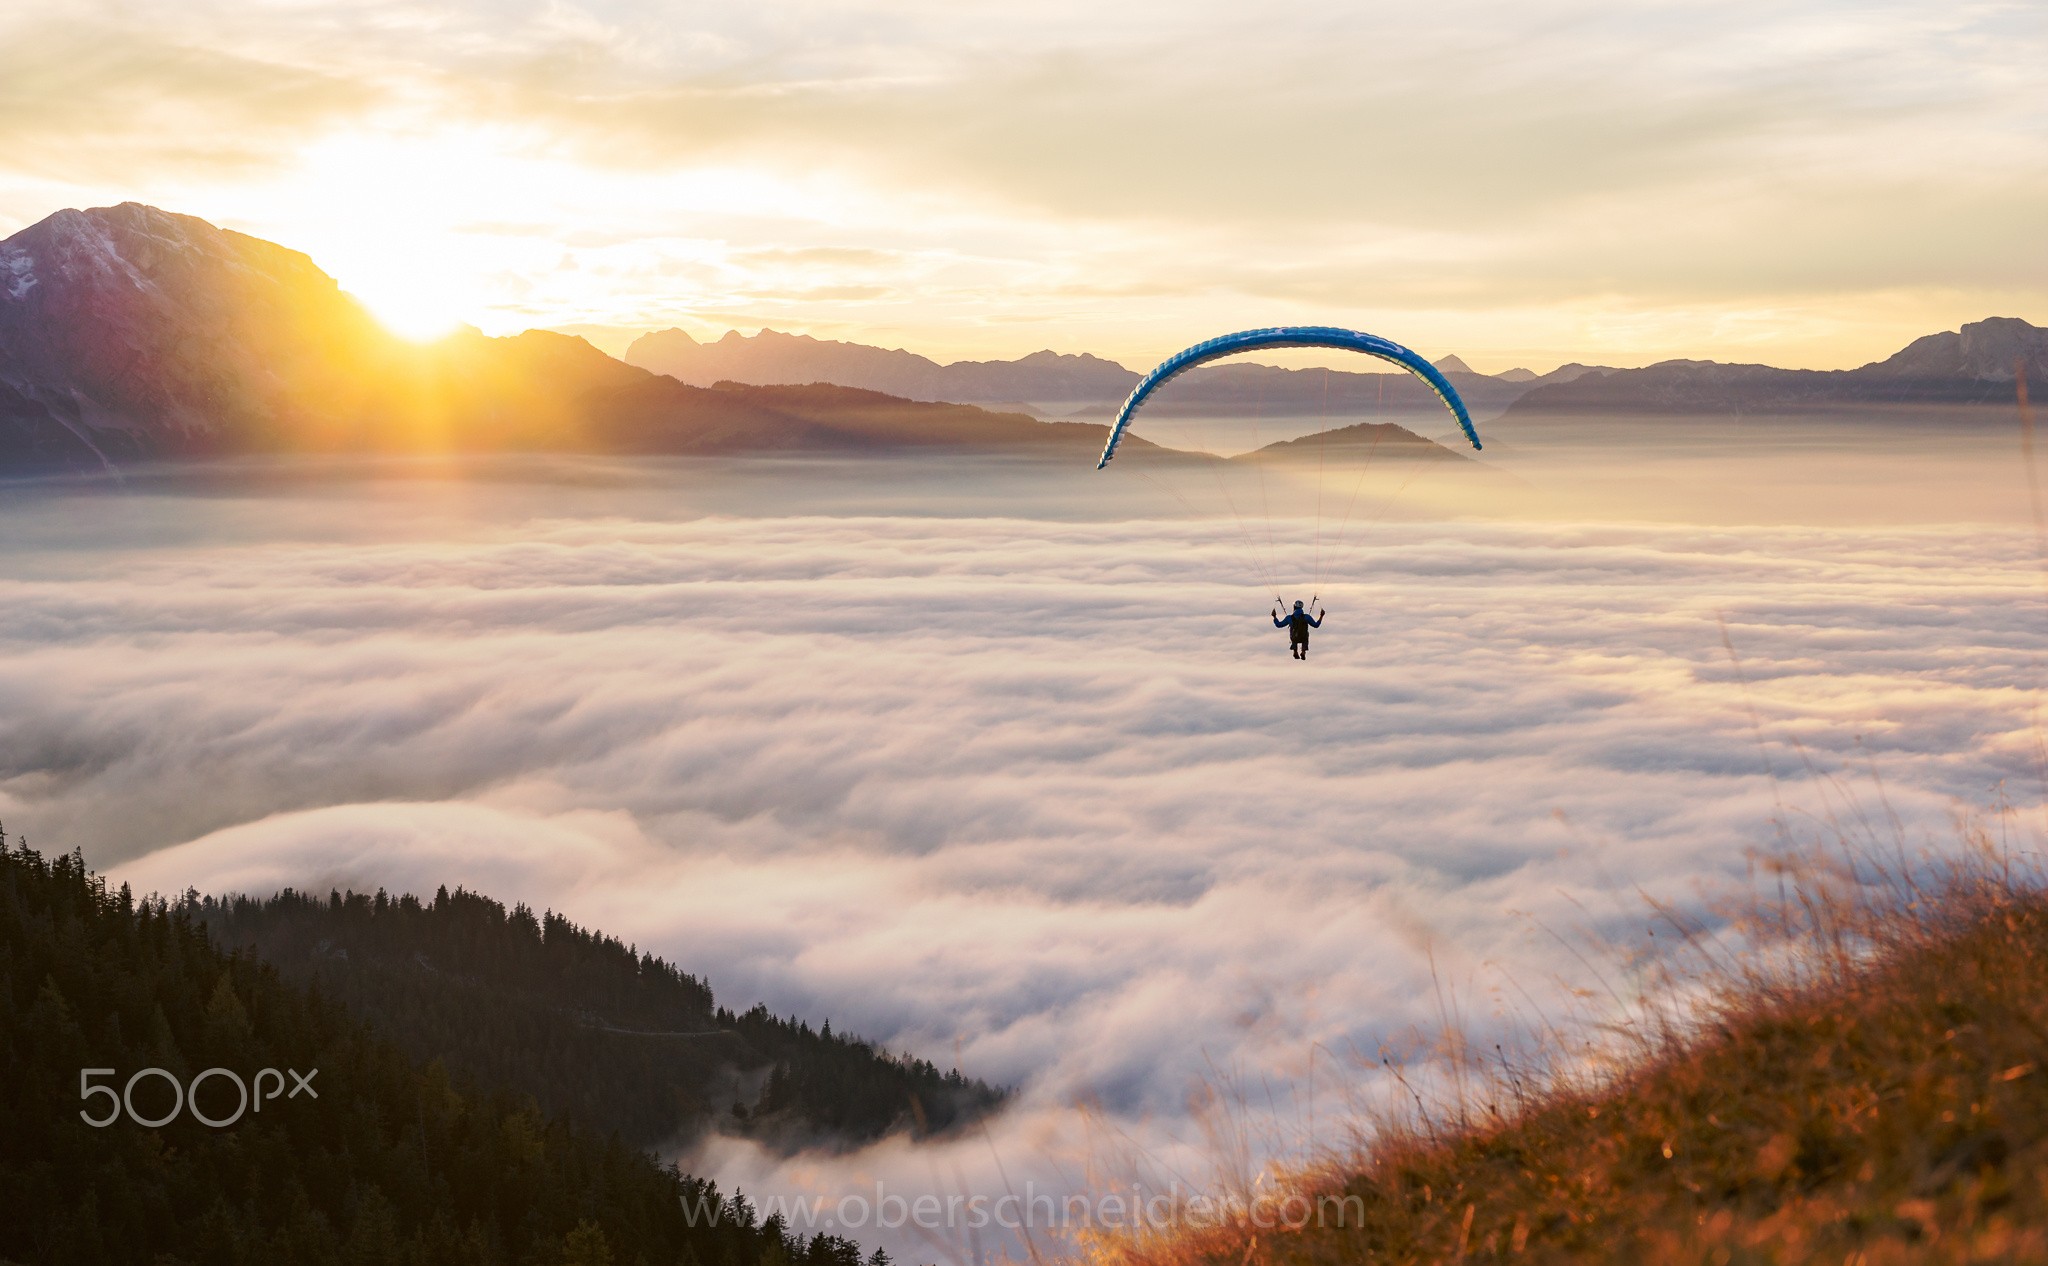 General 2048x1266 landscape mountains clouds sunrise parachutes 500px paragliding